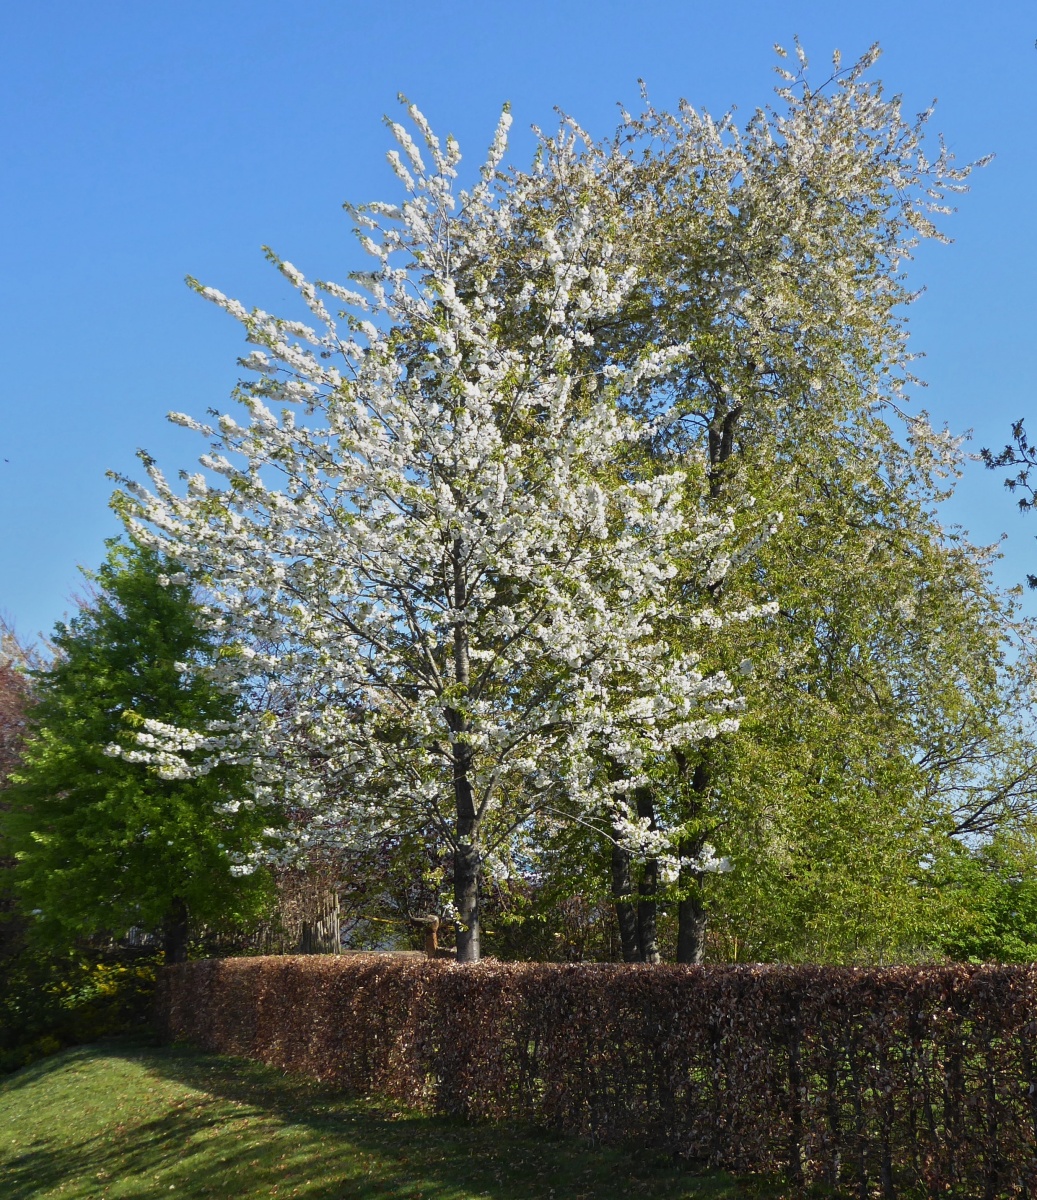 Blühende Bäume nahe den Schulkomplex in Hosingen. Parc Hosingen. 04.2022

